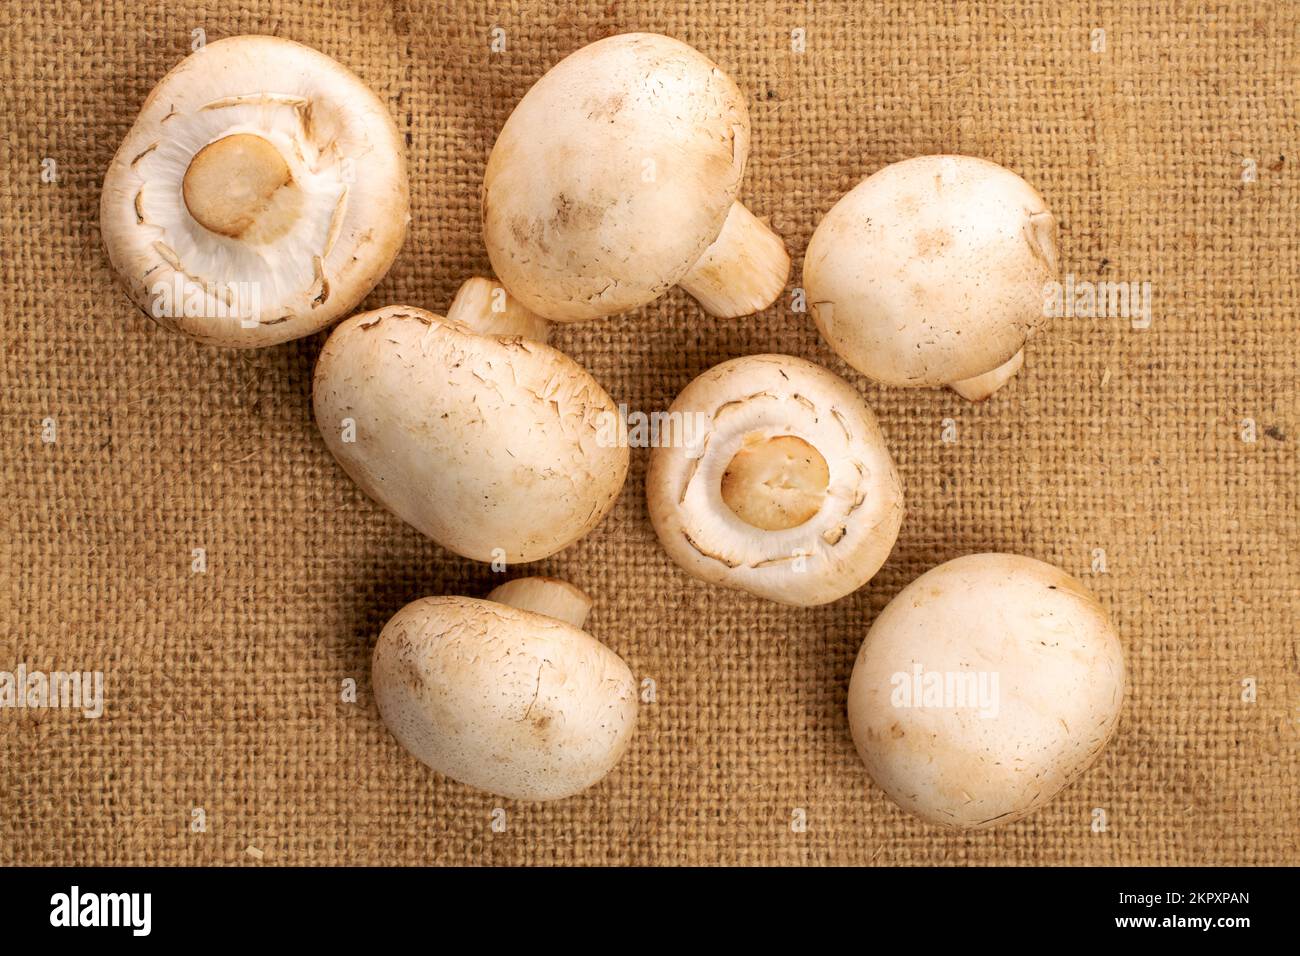 Alcuni funghi freschi e appetitosi champignon su un tovagliolo di iuta, vista dall'alto. Foto Stock